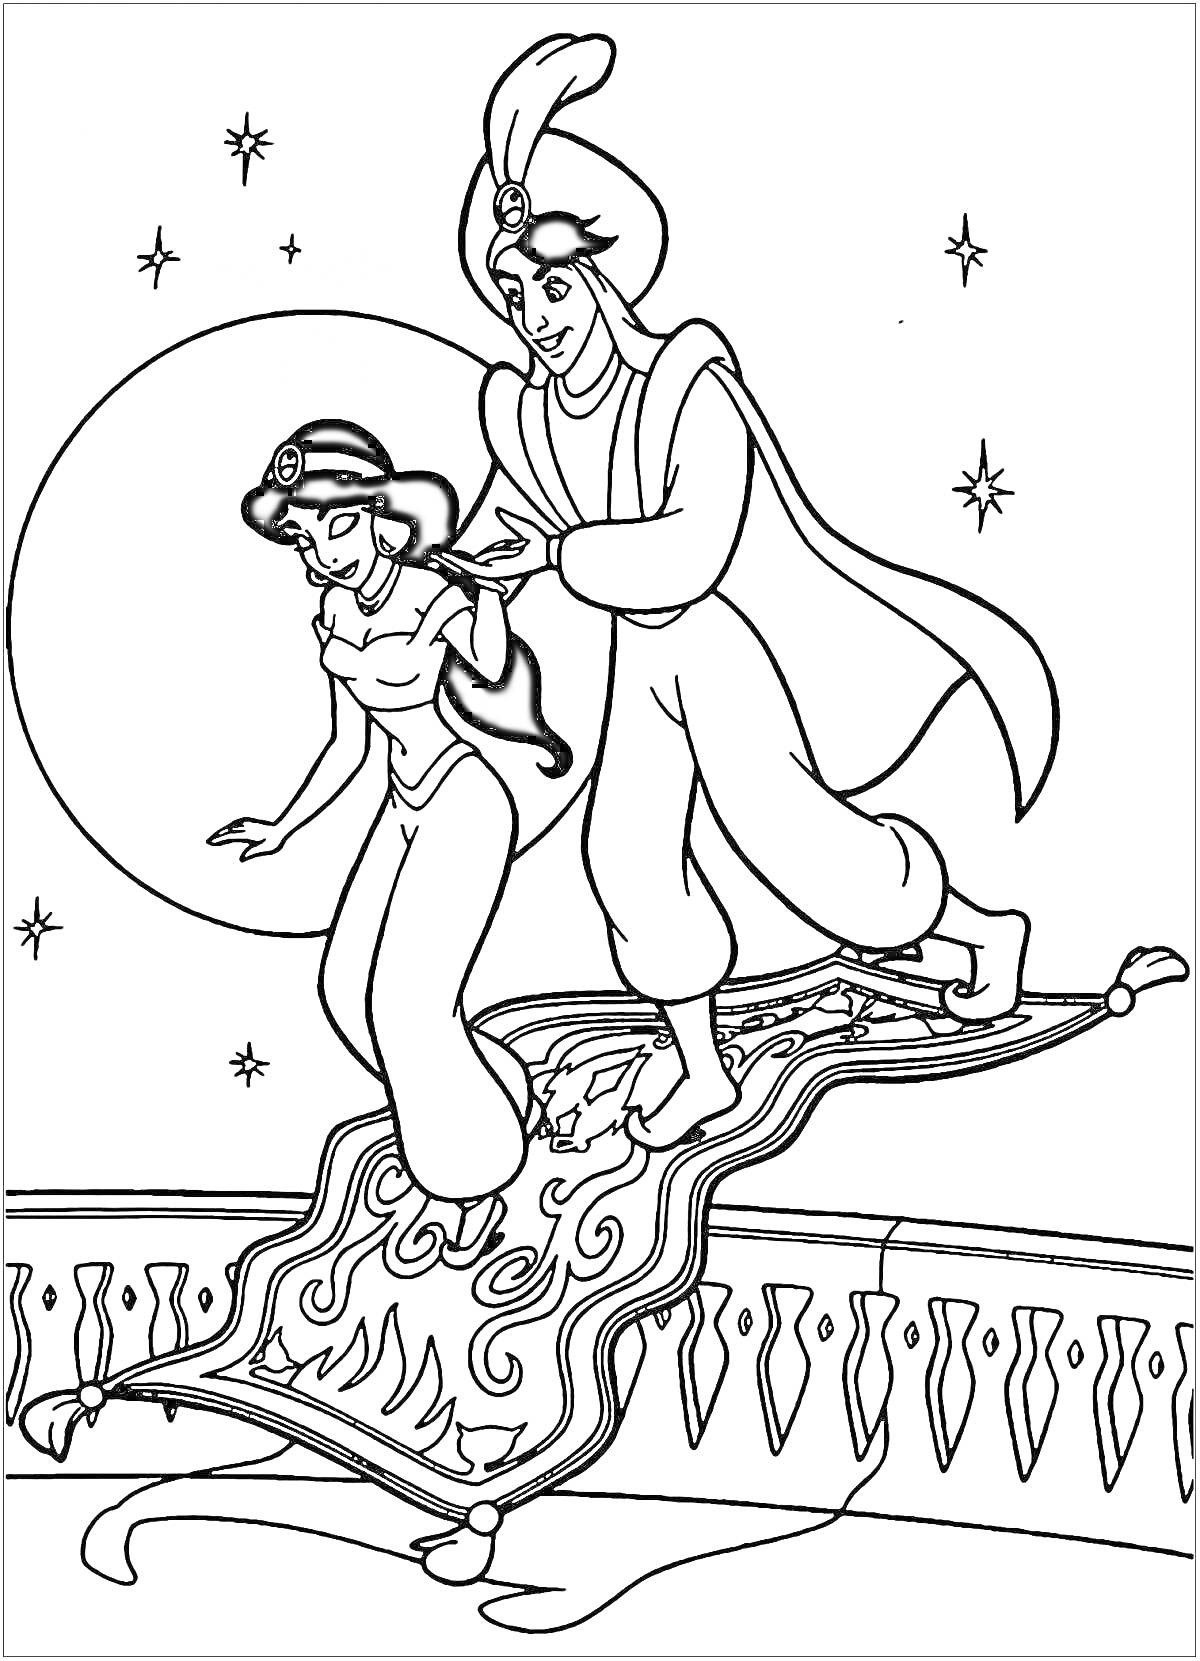 Раскраска Аладдин и Жасмин на летающем ковре с полной луной и звездами на заднем плане